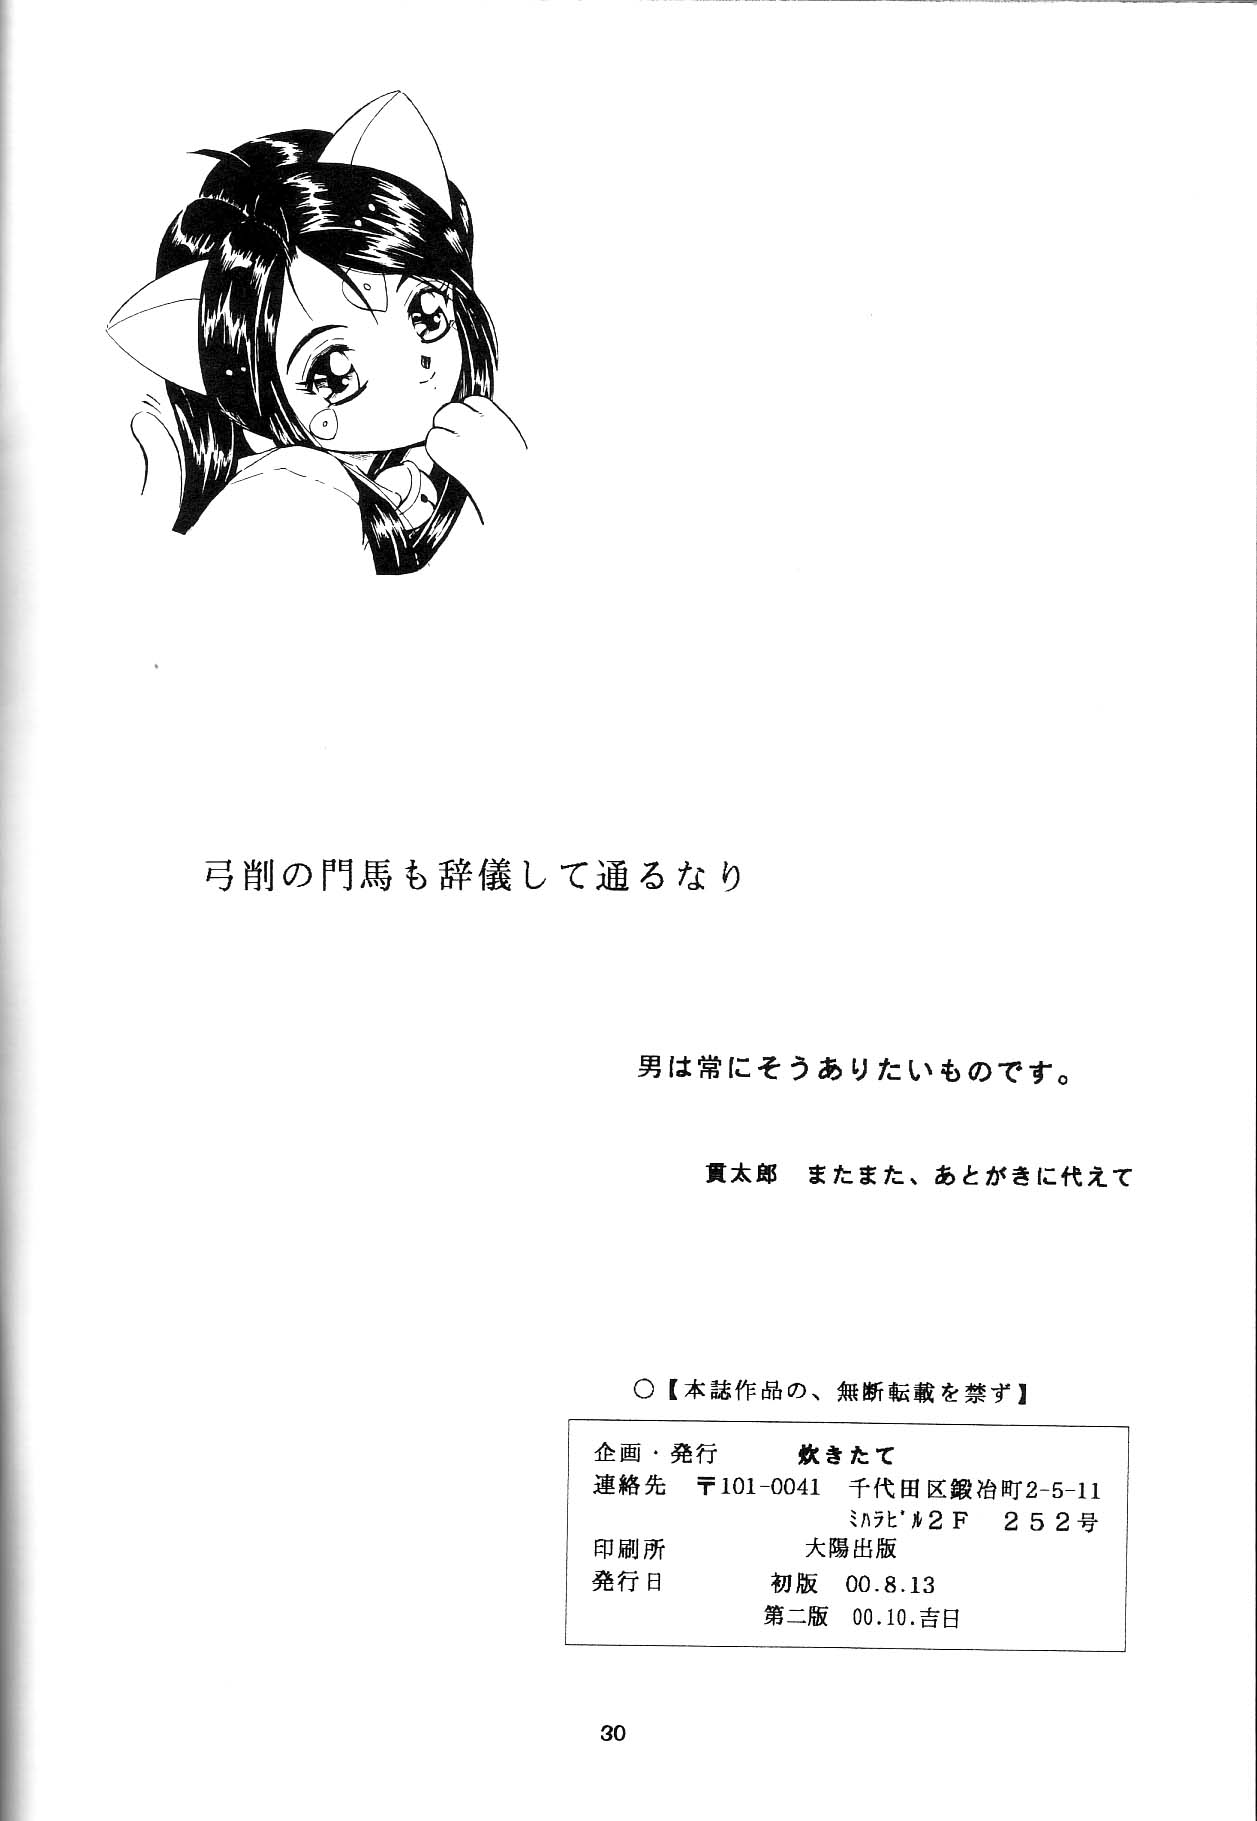 [Takitate] Than Para (Ah! Megami-sama/Ah! My Goddess) page 29 full